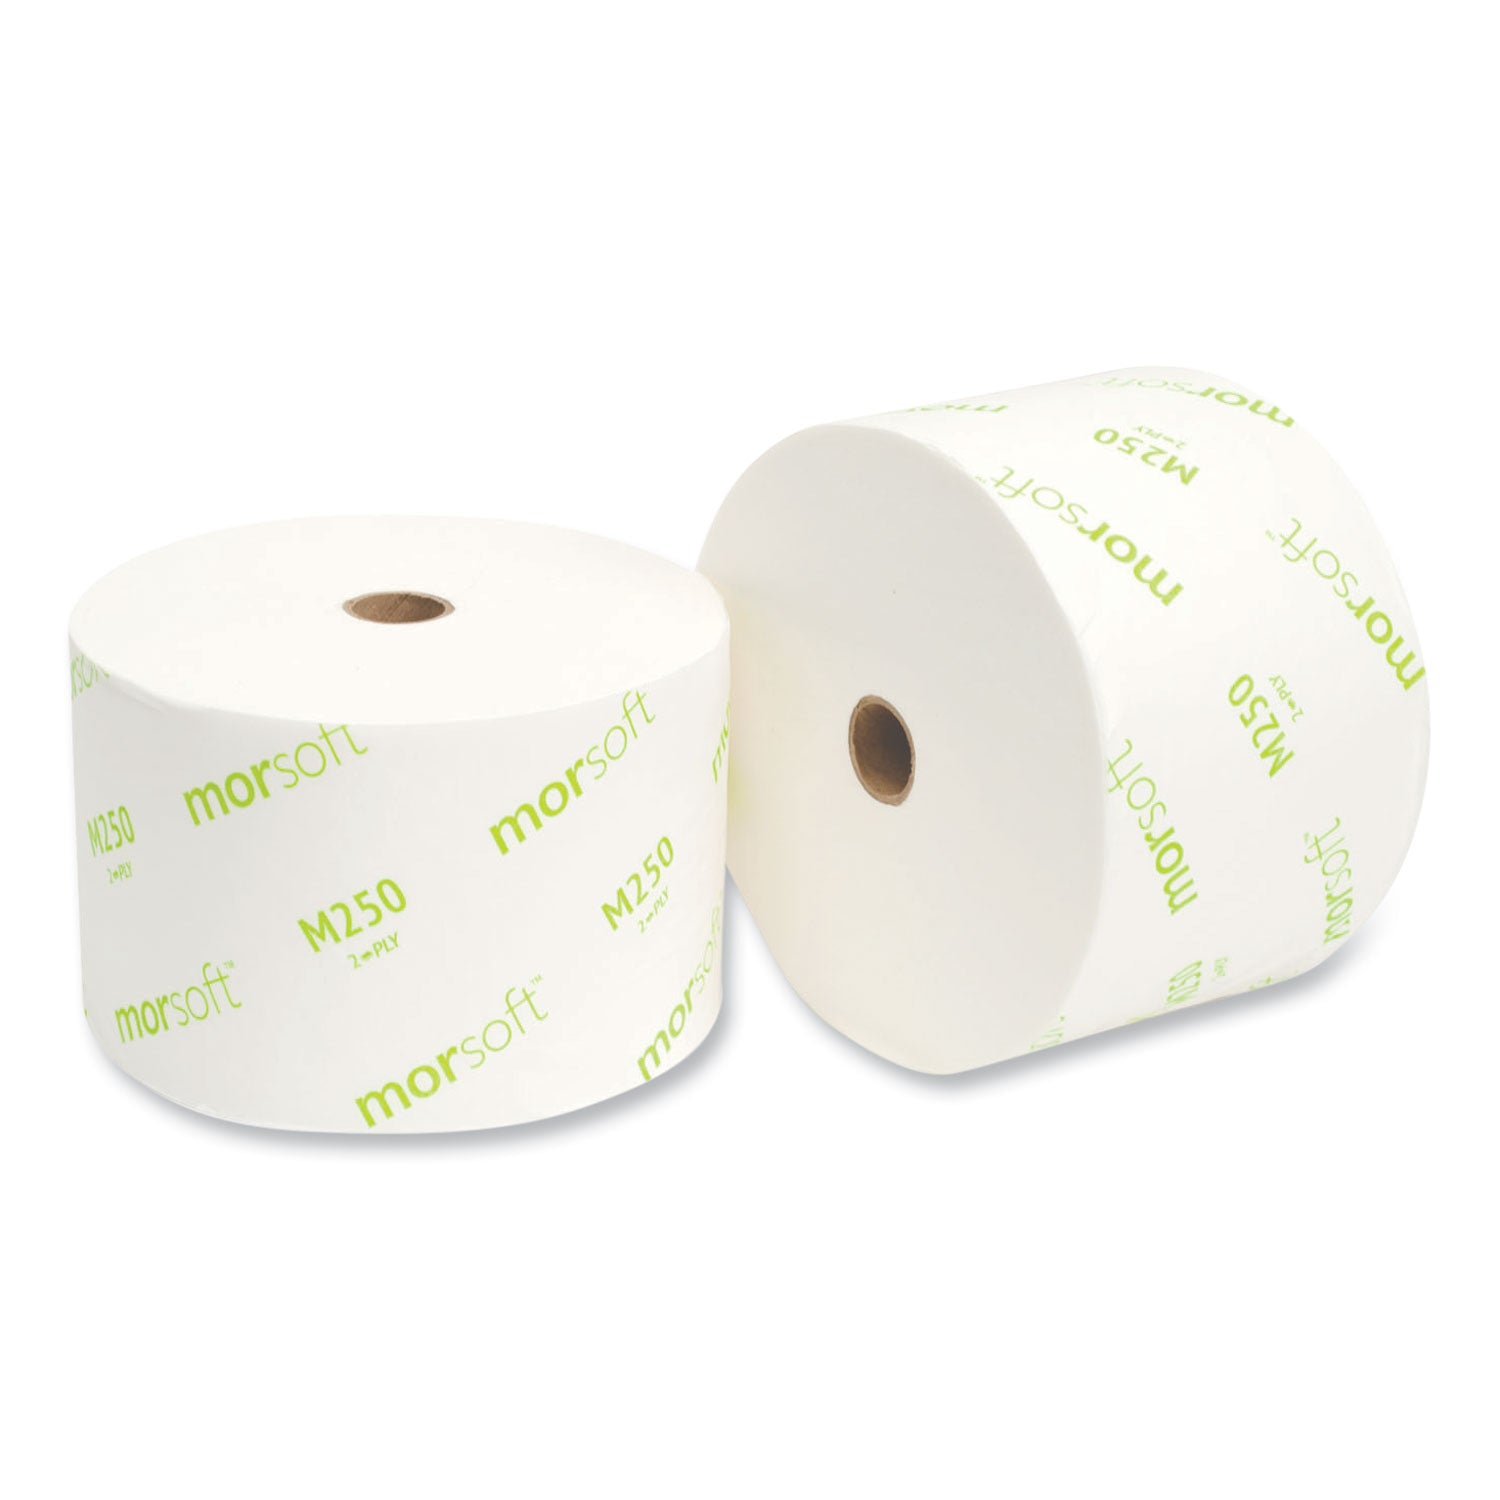 small-core-bath-tissue-septic-safe-2-ply-white-1250-roll-24-rolls-carton_morm250 - 5